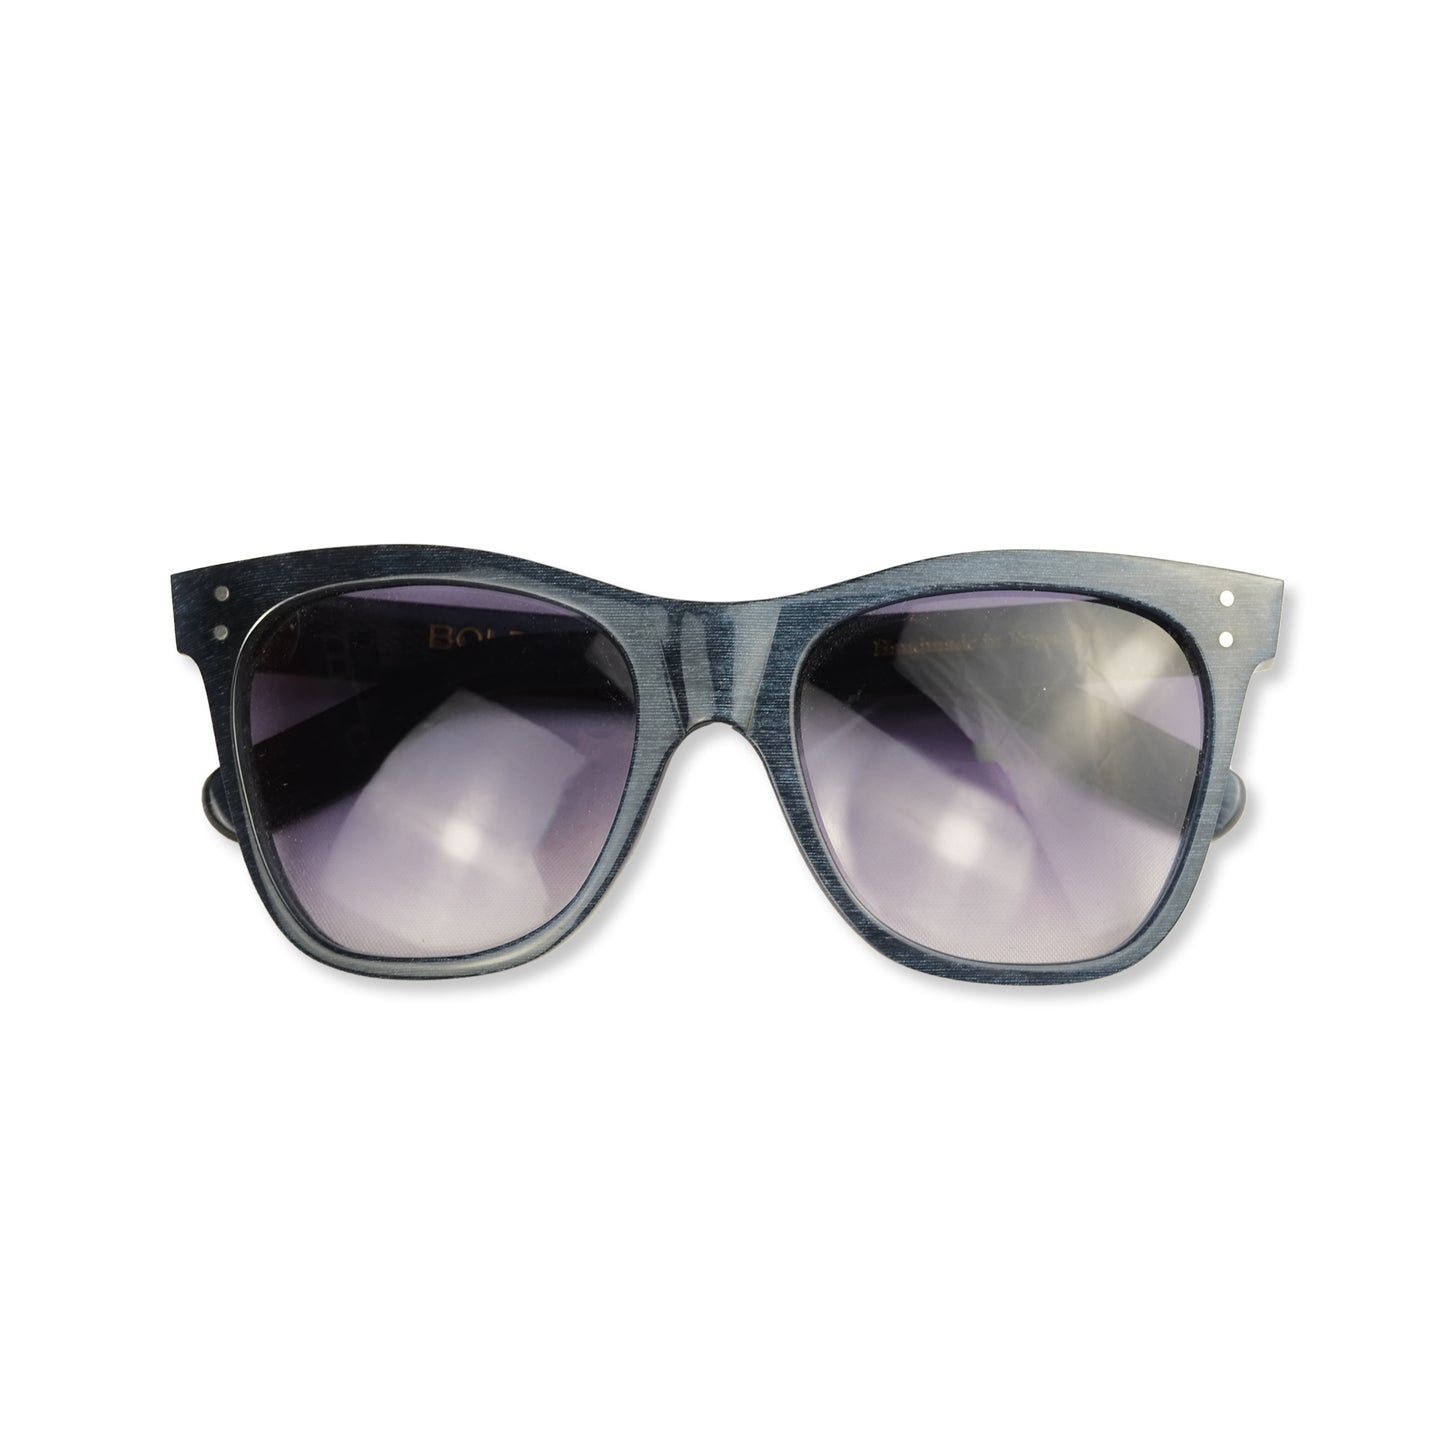 Hanbury Sunglasses / Dark Blue Metallic